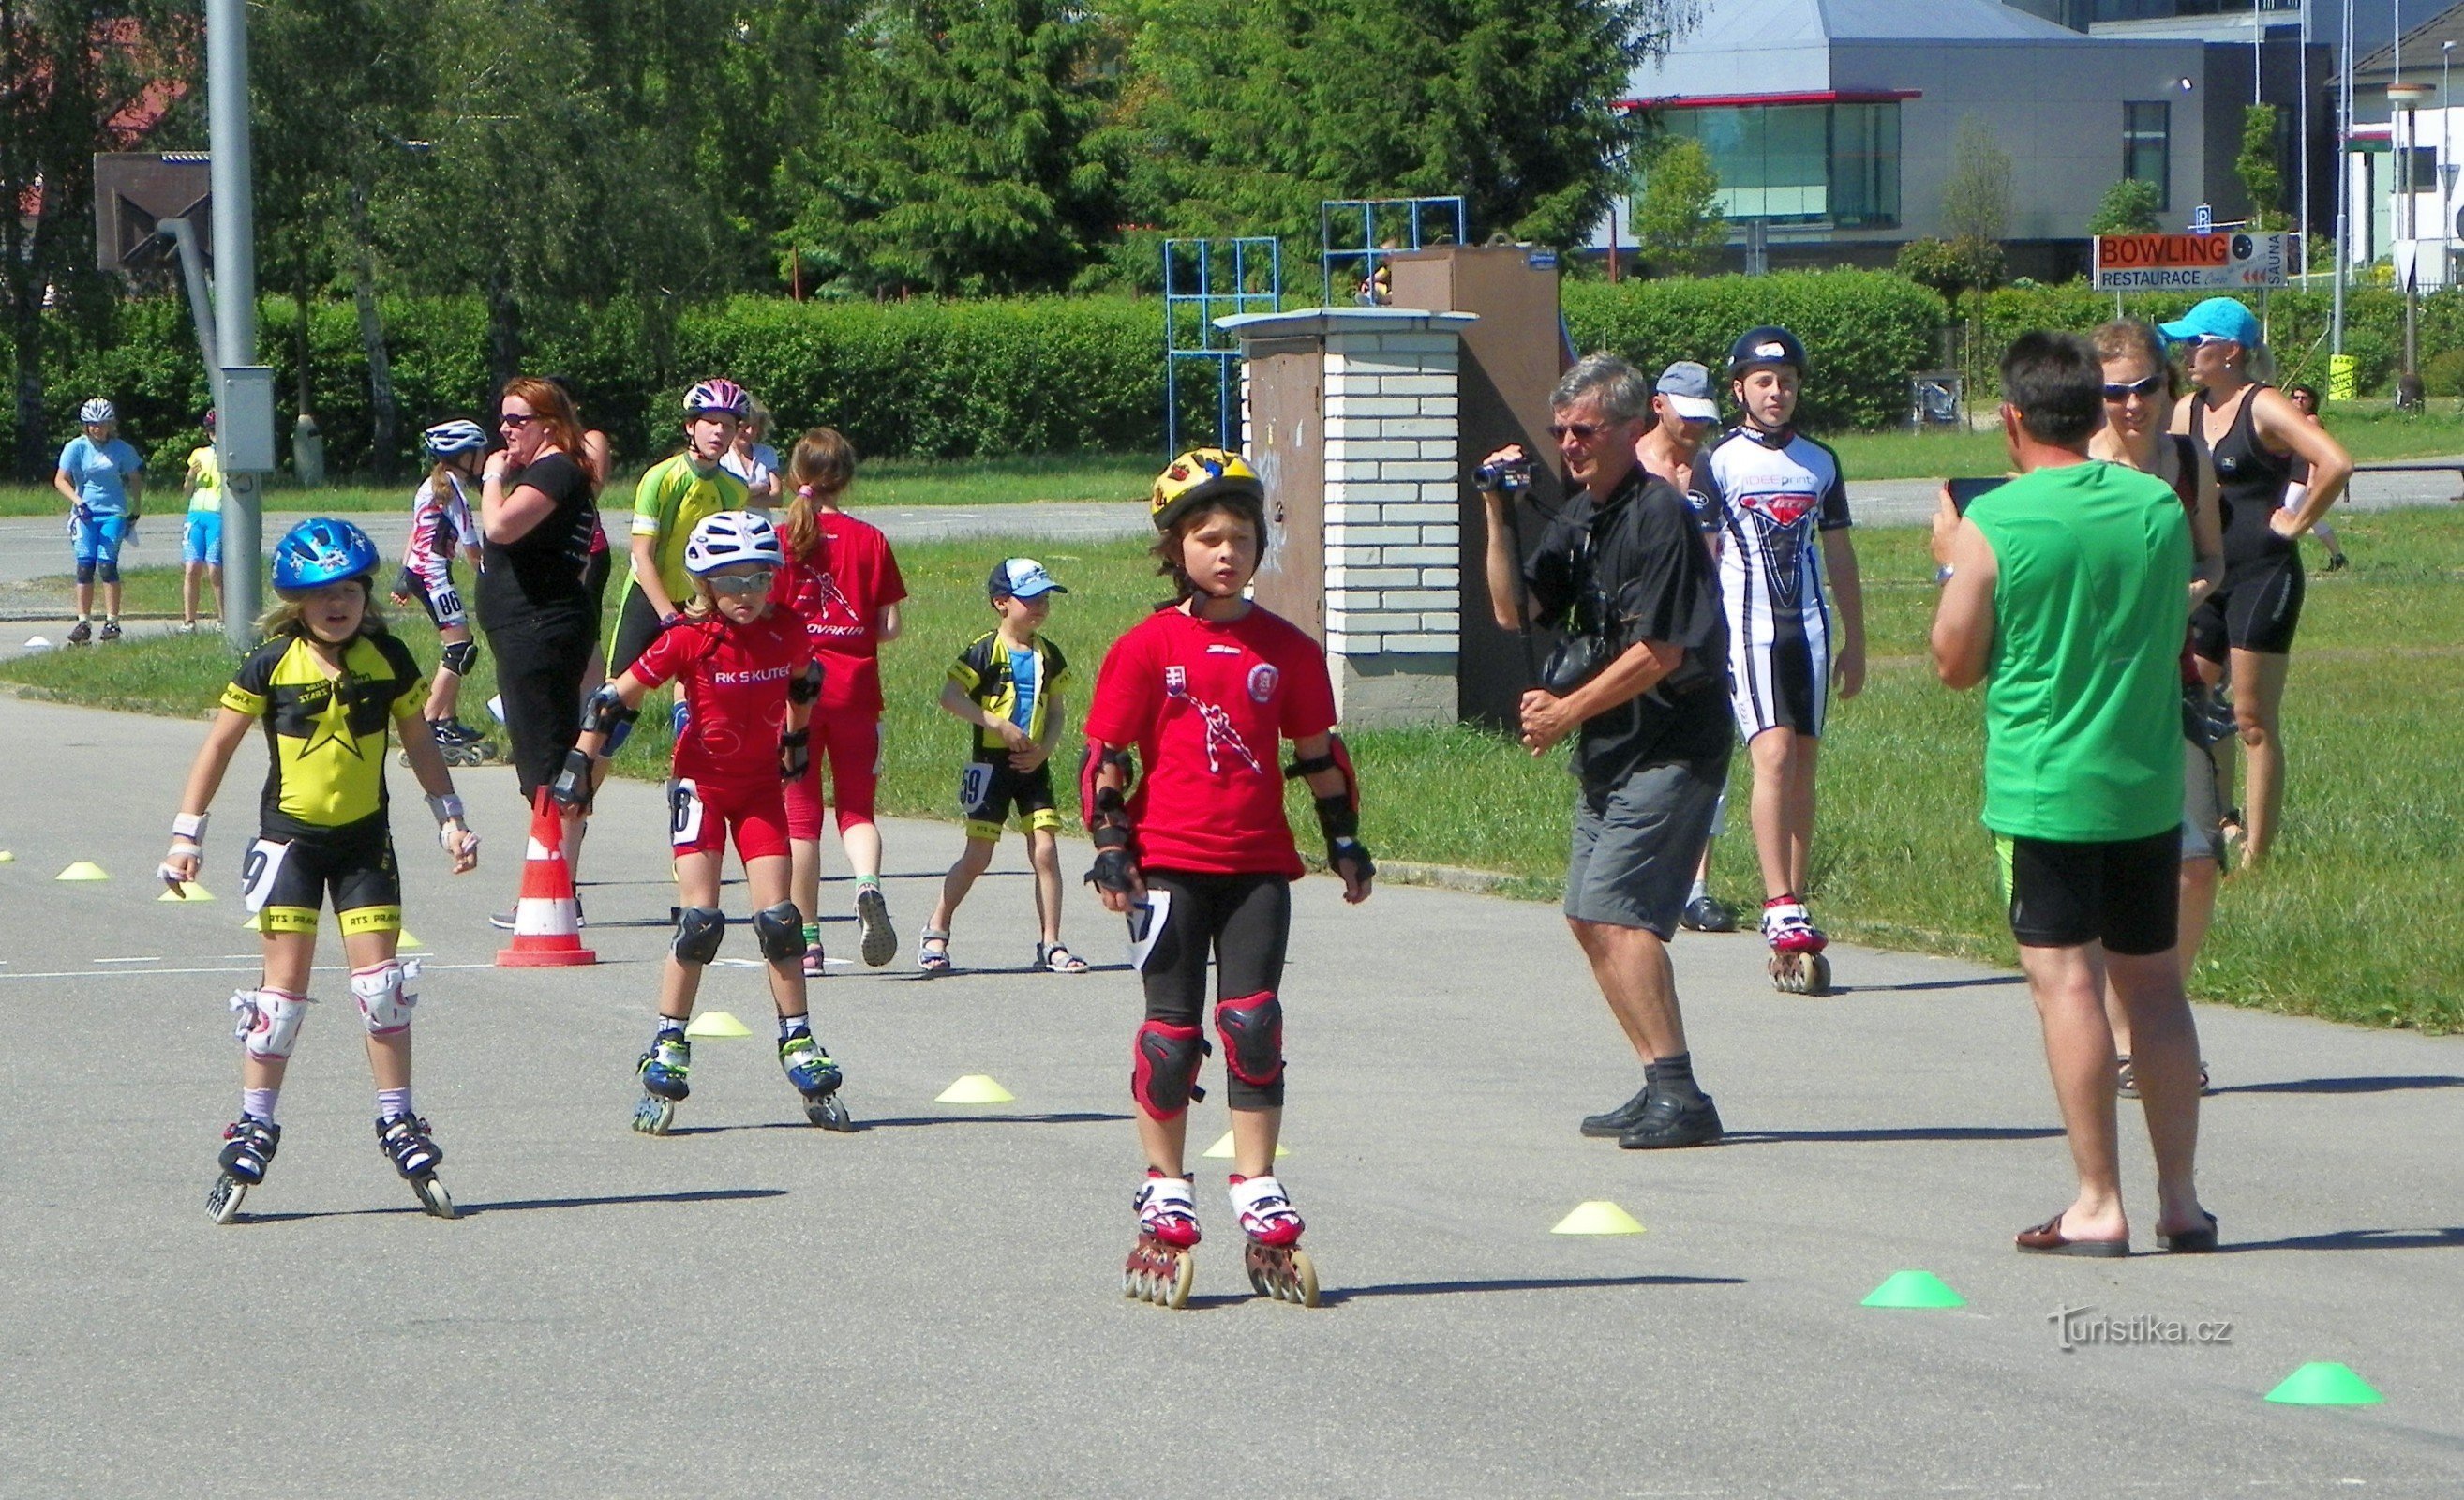 MČR in speed skating on inline skates 7.6.2014/XNUMX/XNUMX